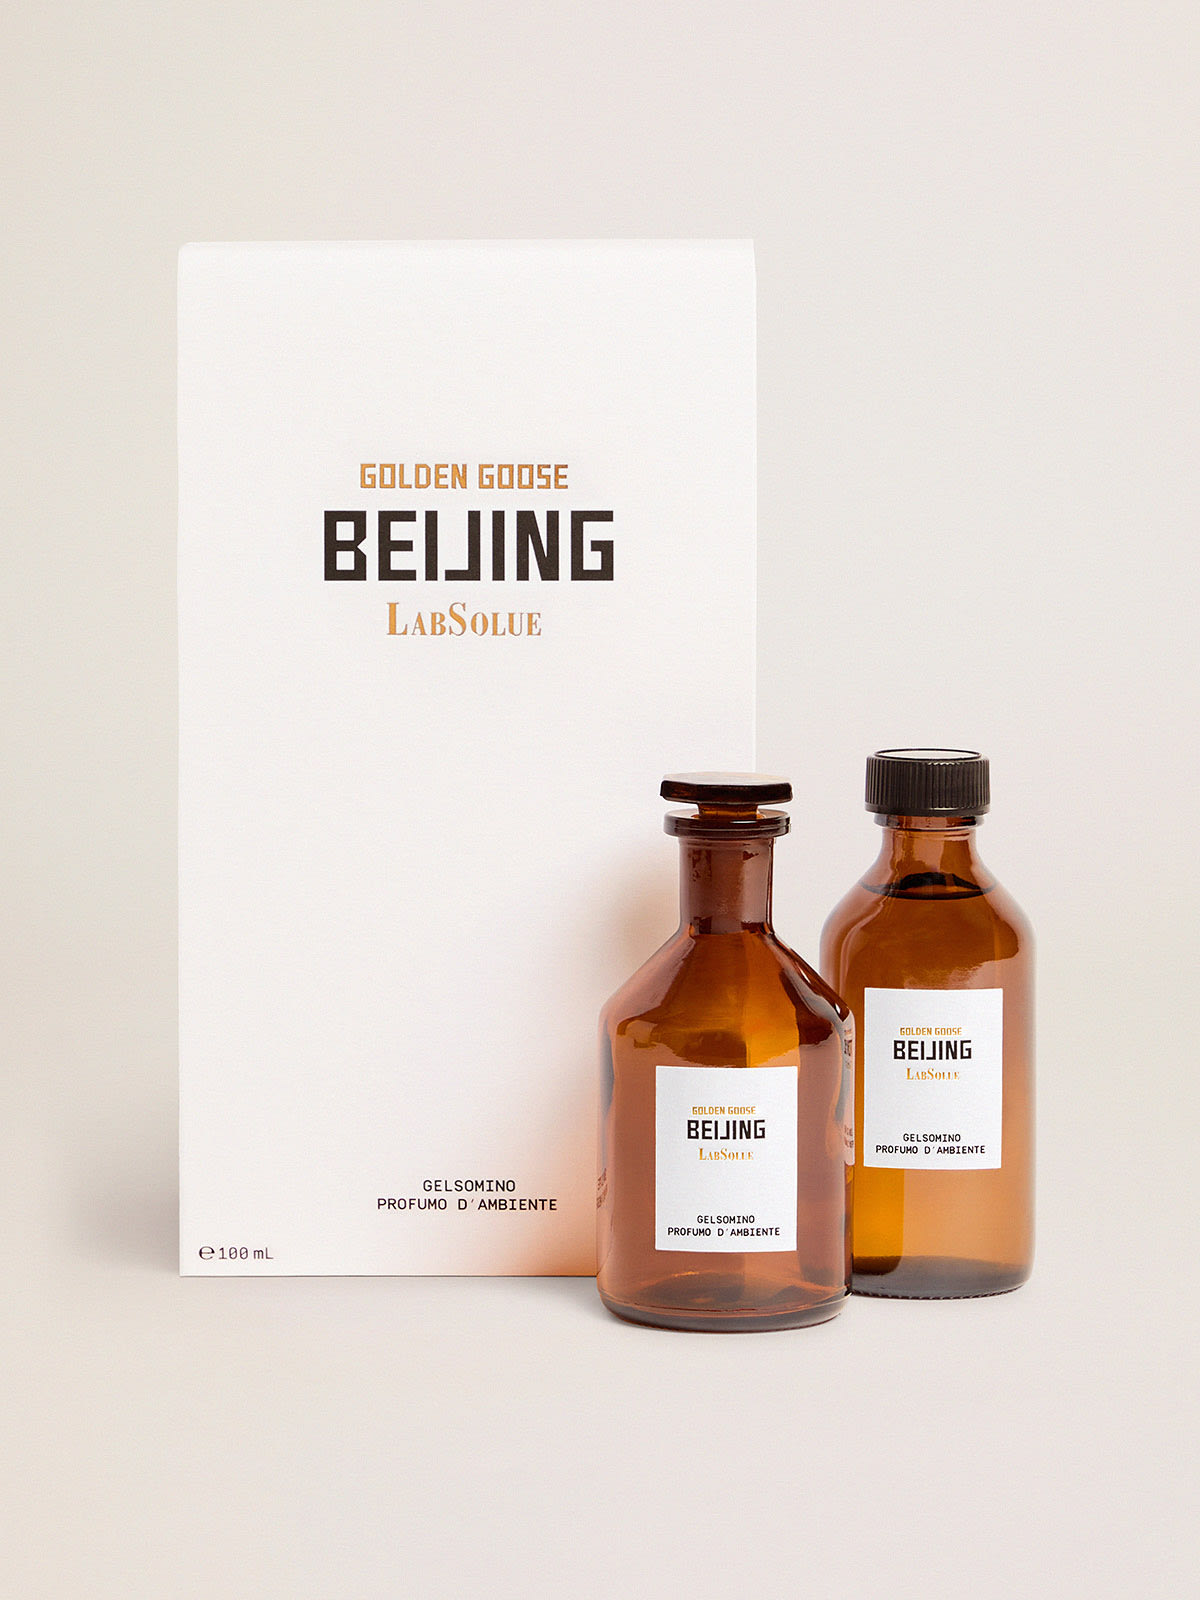 Golden Goose - Beijing Essence jasmin parfum d’ambiance 100 ml in 